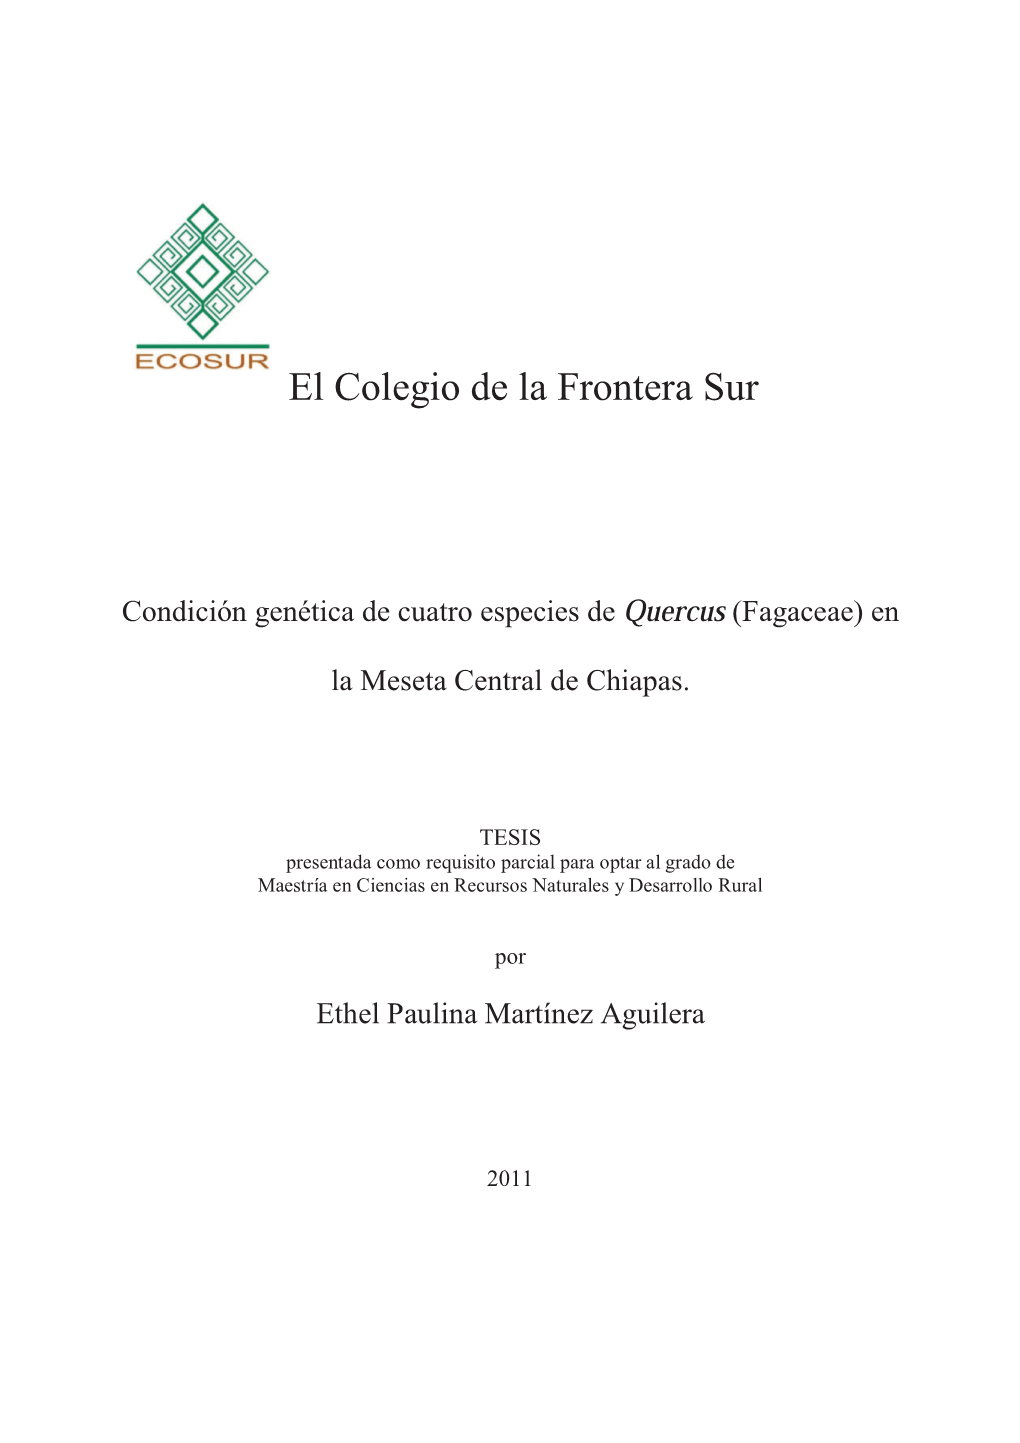 (Fagaceae) En La Meseta Central De Chiapas. Para Obtener El Grado De Maestro En Ciencias En Recursos Naturales Y Desarrollo Rural